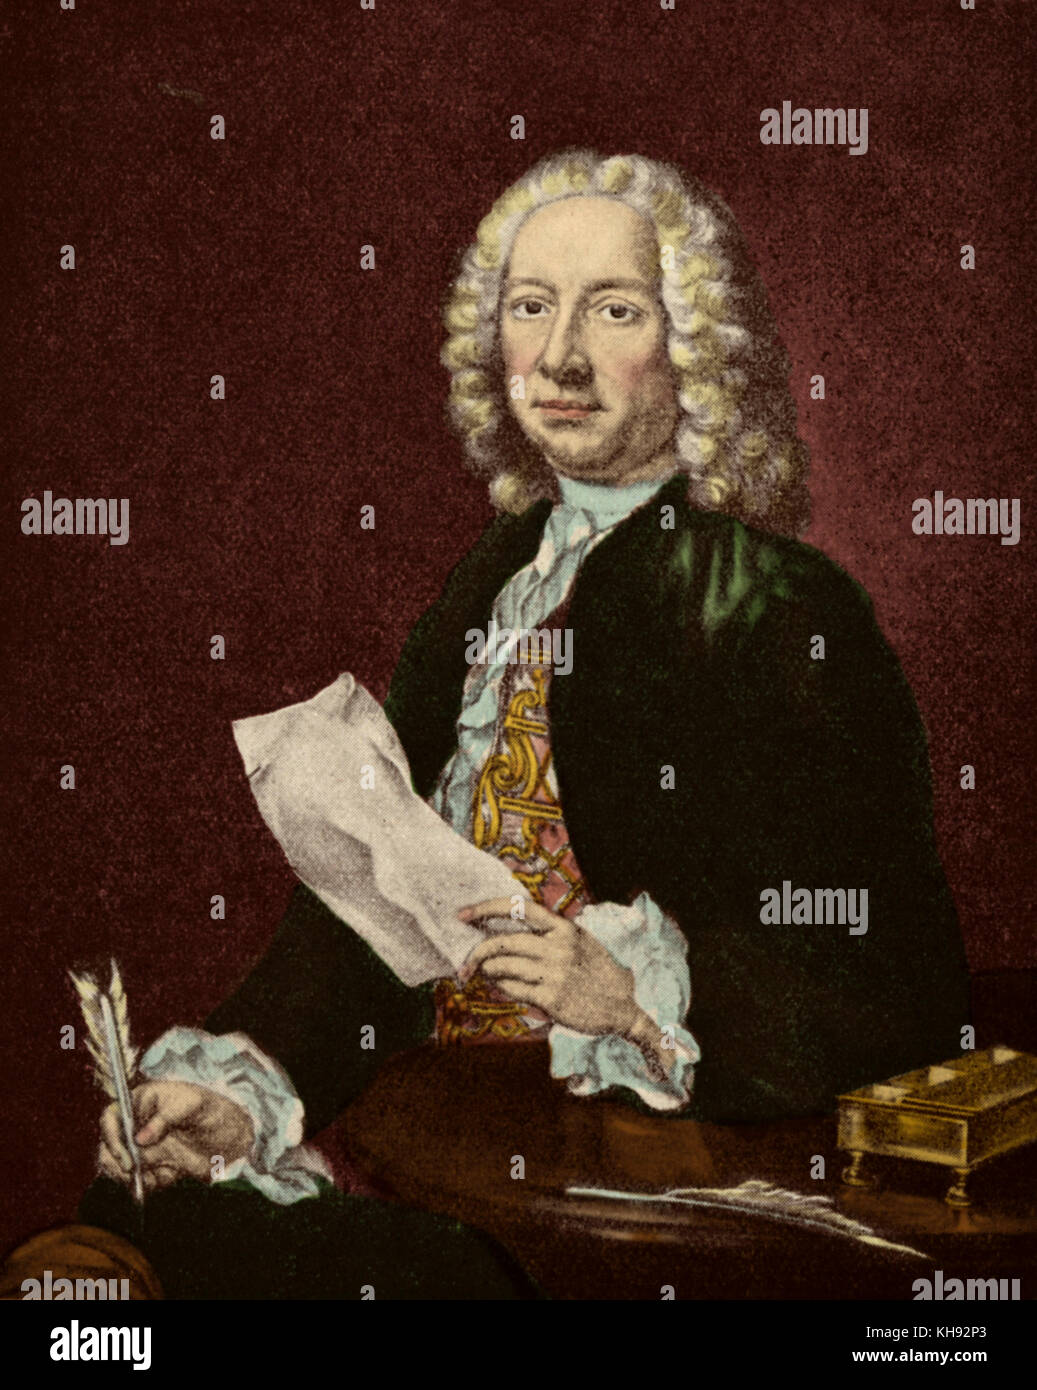 Francesco Geminiani - retrato. Autor del primer método de violín. Violinista y compositor italiano. Alumno de Corelli. 5 de diciembre de 1687 - 17 de septiembre de 1762. Foto de stock